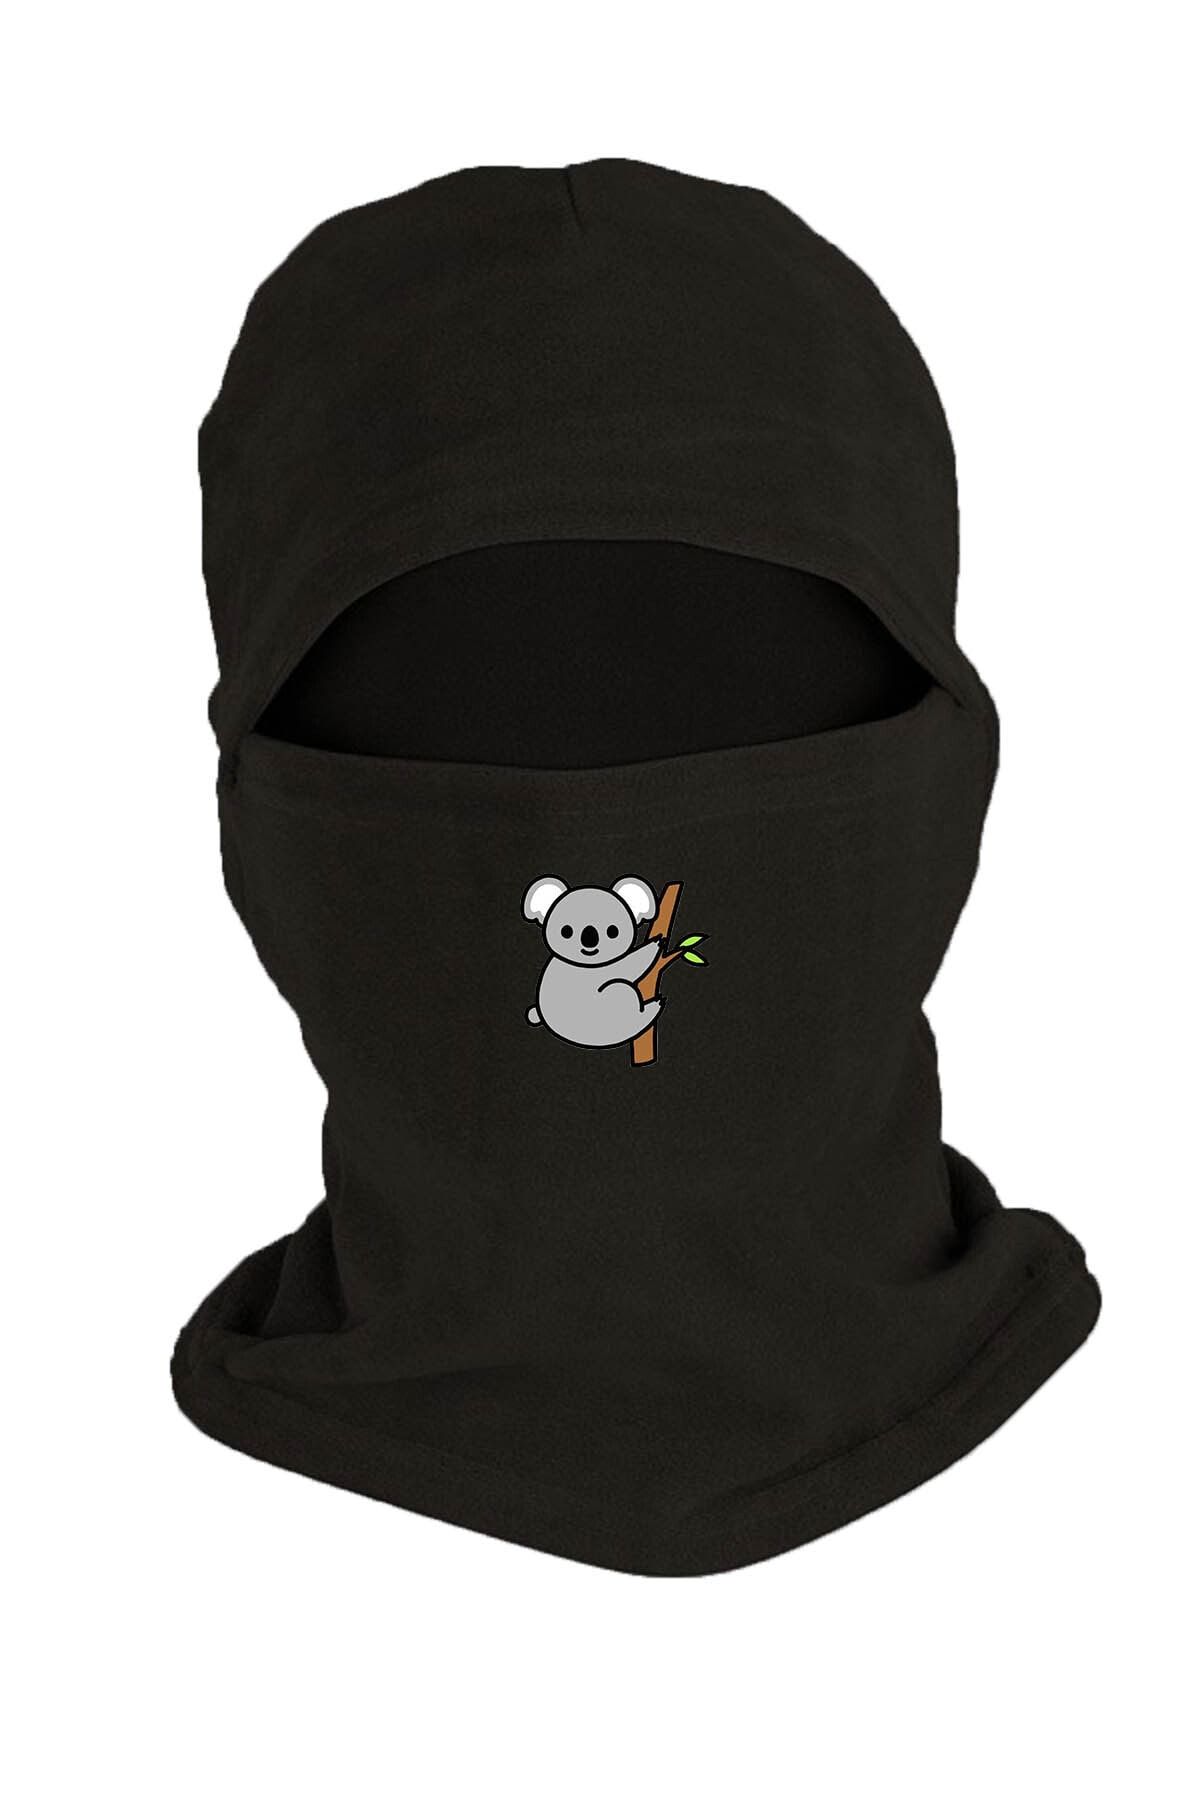 Zeron Tasarım Koala Baskılı Kışlık Polar Kar Maskesi Siyah Bll2324